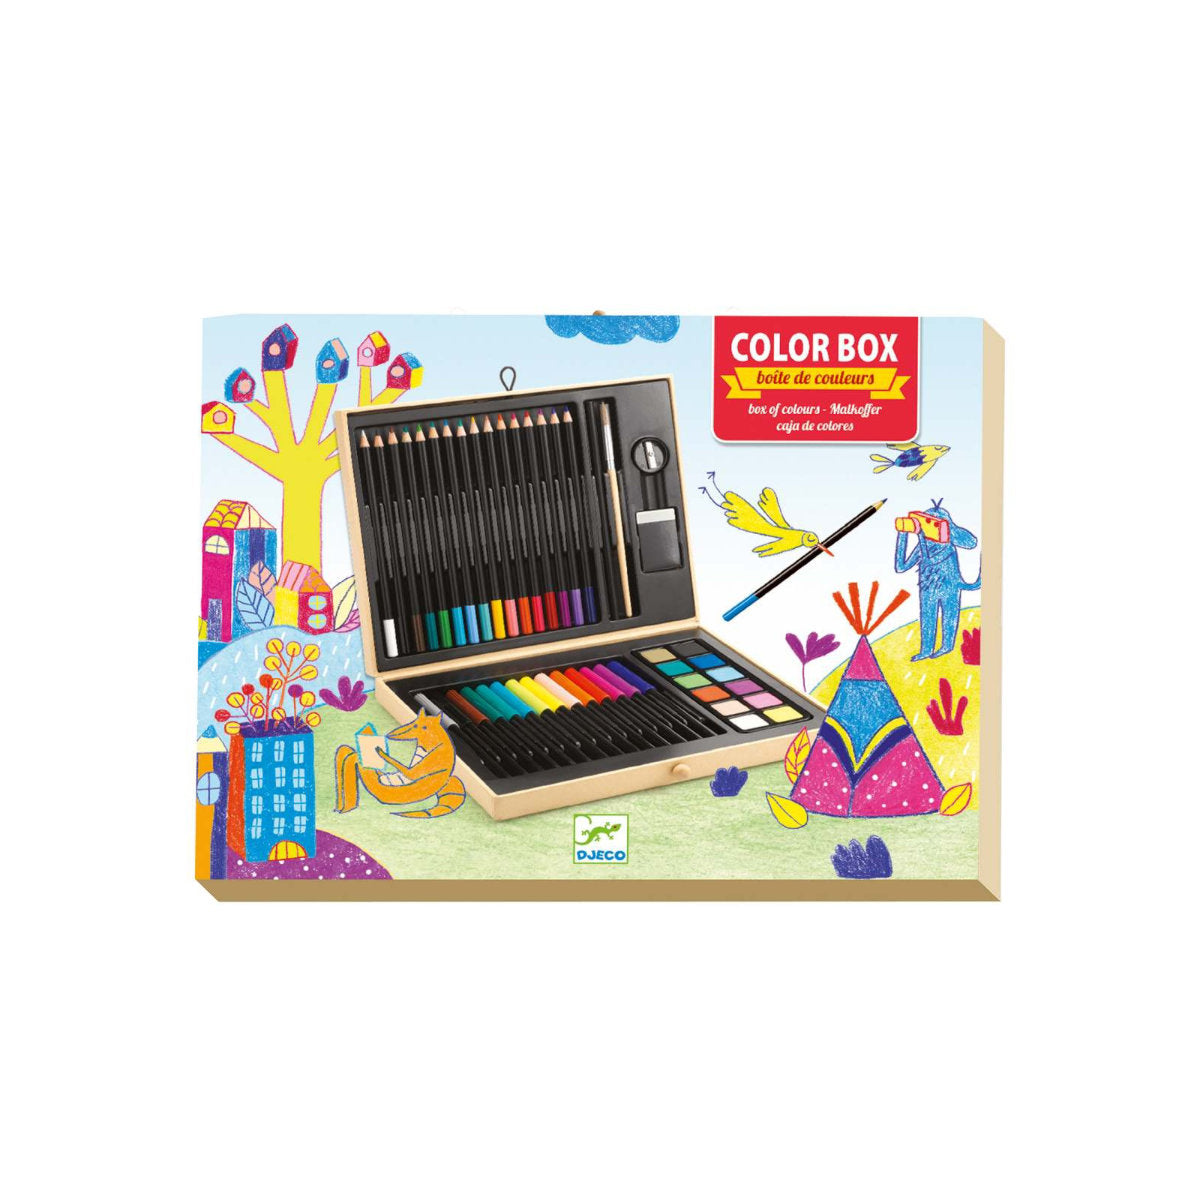 DJECO Malstifte Box Set aus verschiedenen Farben, Stiften & Zubehör